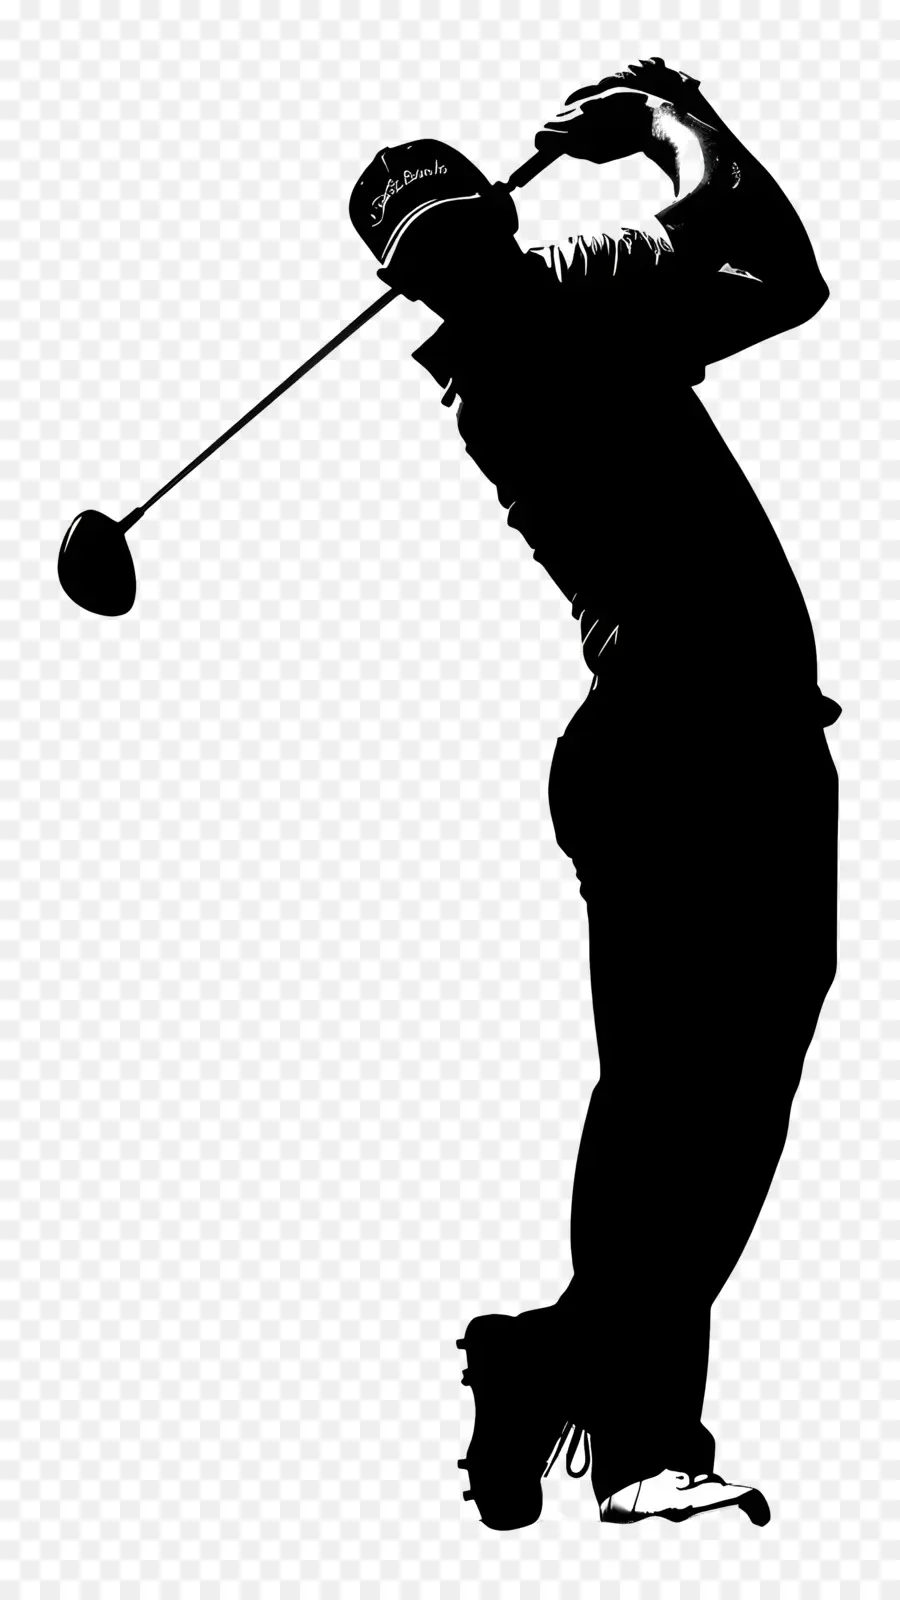 Golfmann Silhouette Golf Man Swinging Club - Mann Swinging Golf Club im monochromen Bild